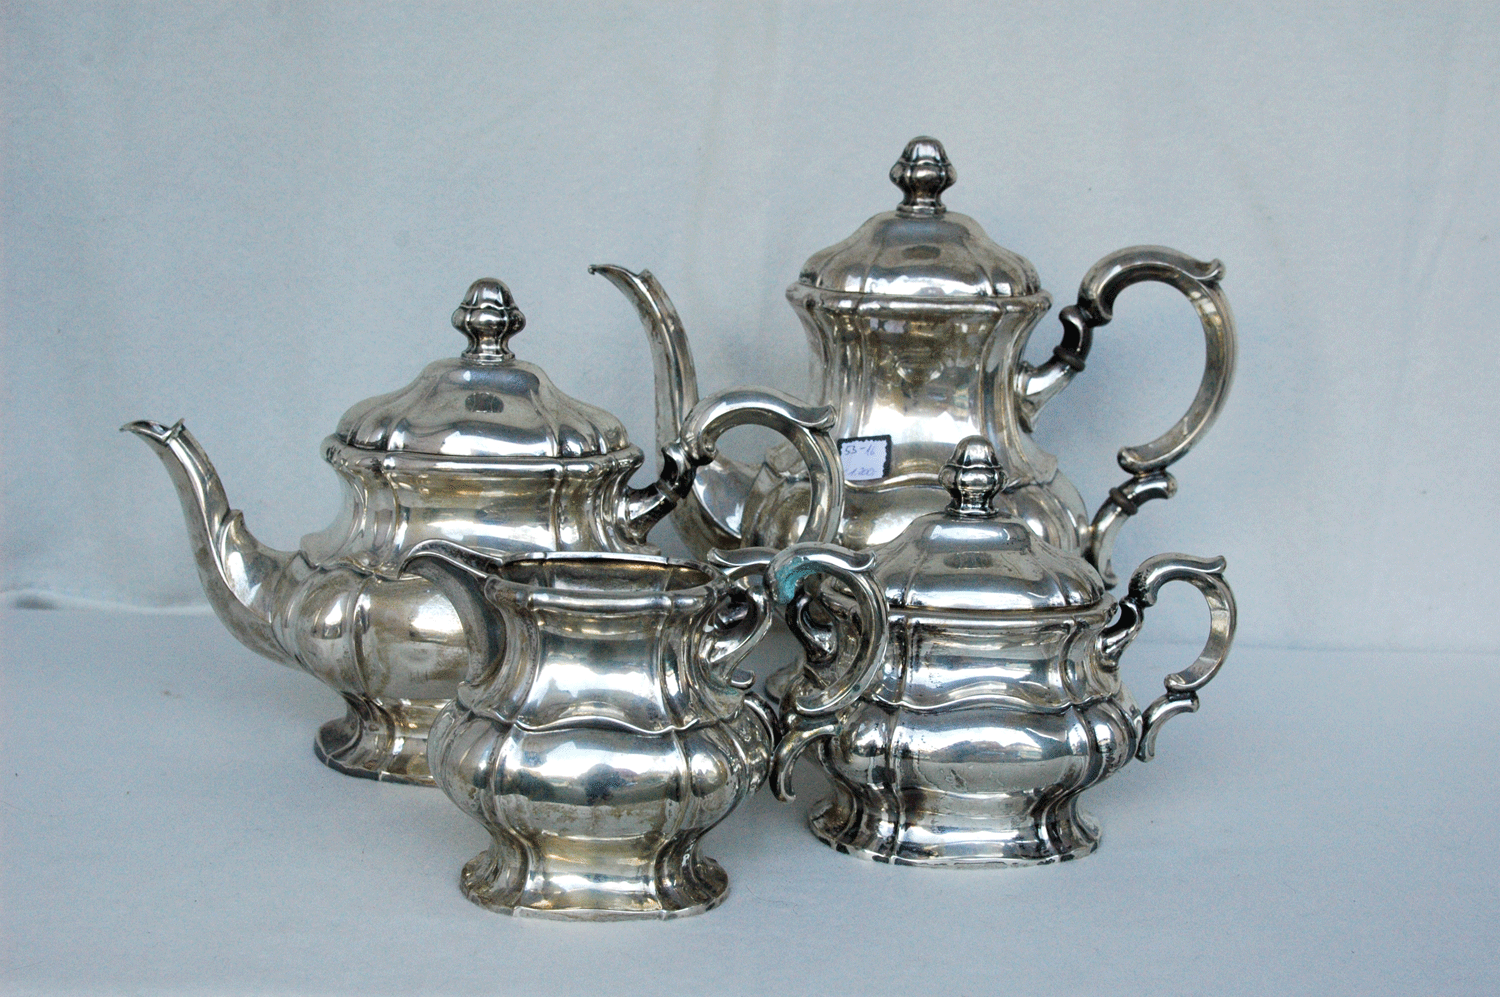 Kaffeekanne, Teekanne, Rahmservice, 835/- Silber, 1670 g